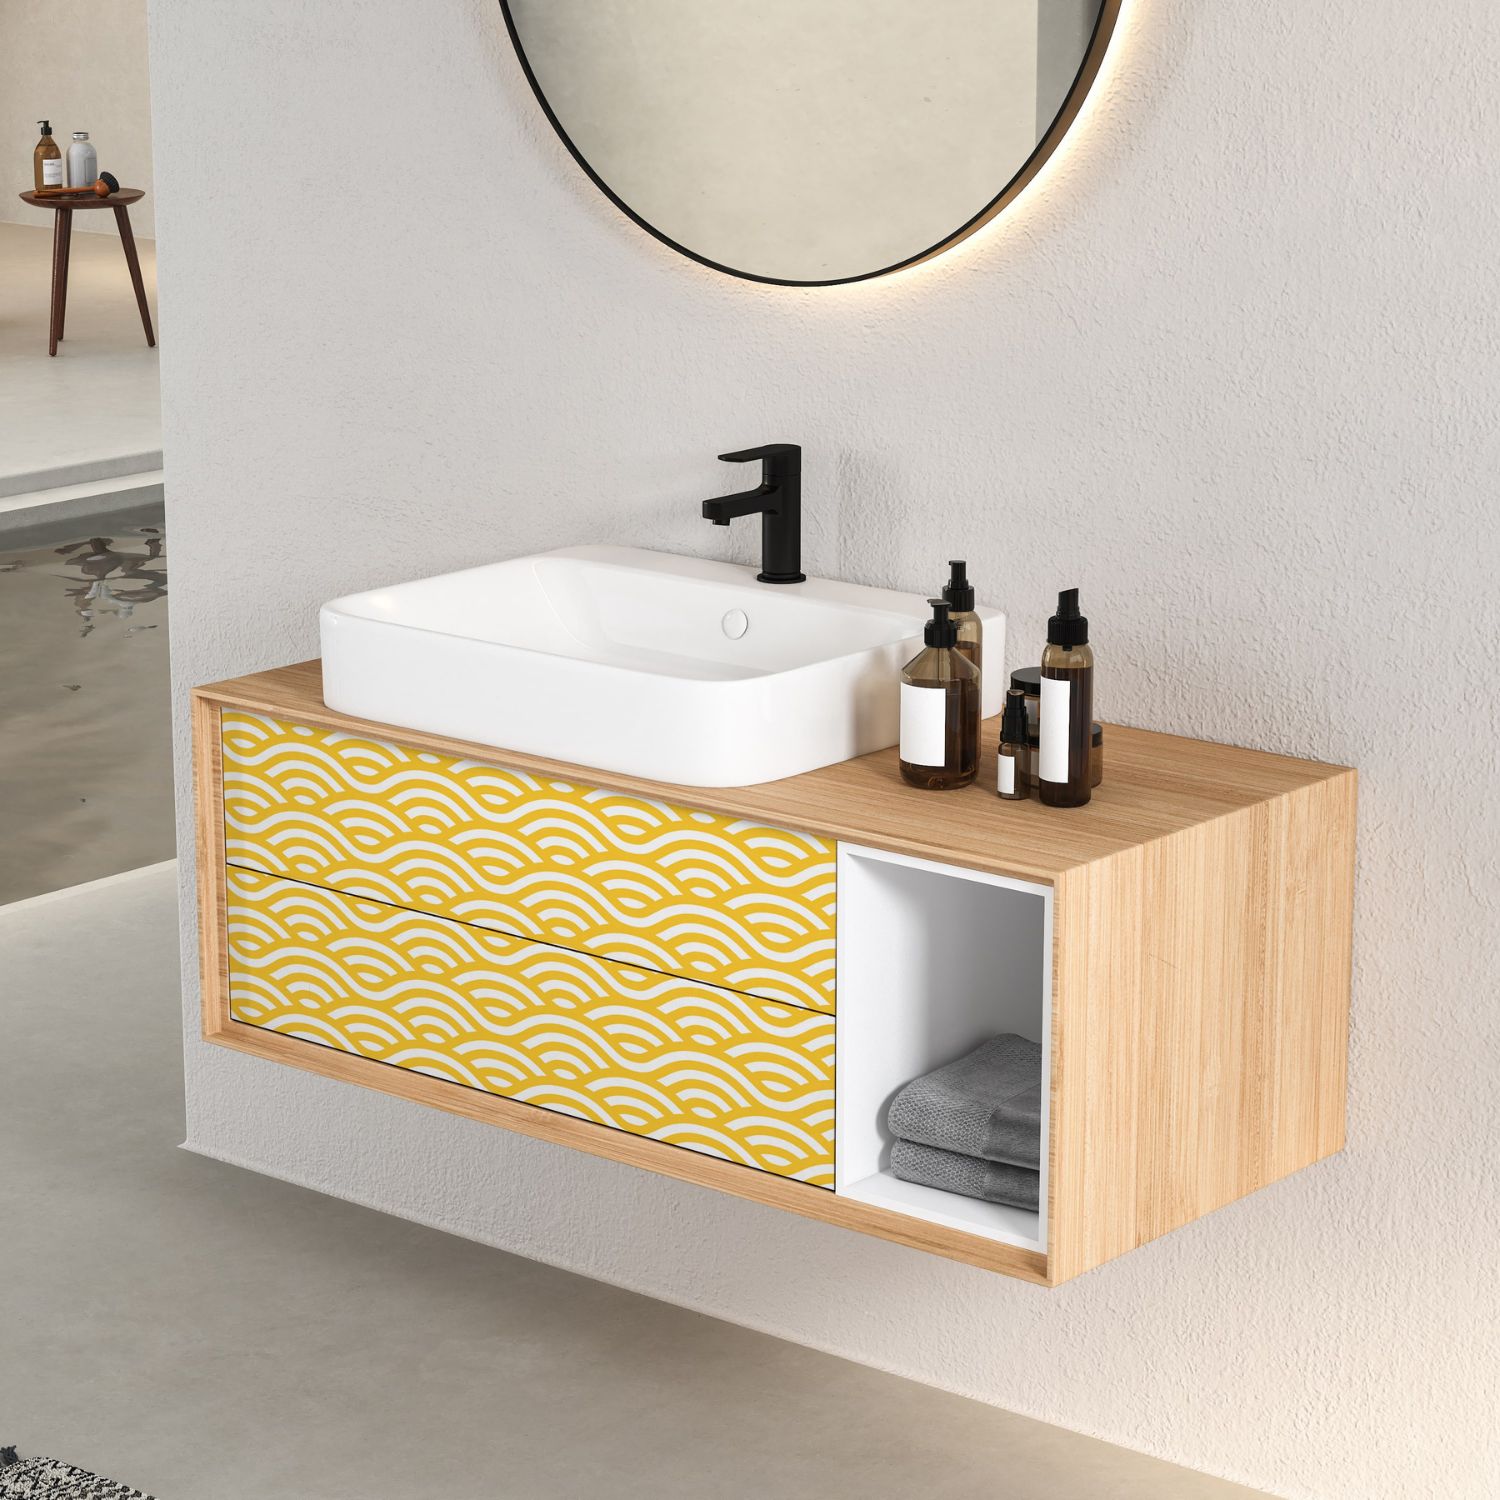 PP40-meuble-papier-peint-adhesif-decoratif-revetement-vinyle-vague-motifs-japonaise-jaune-nouilles-renovation-meuble-mur-6